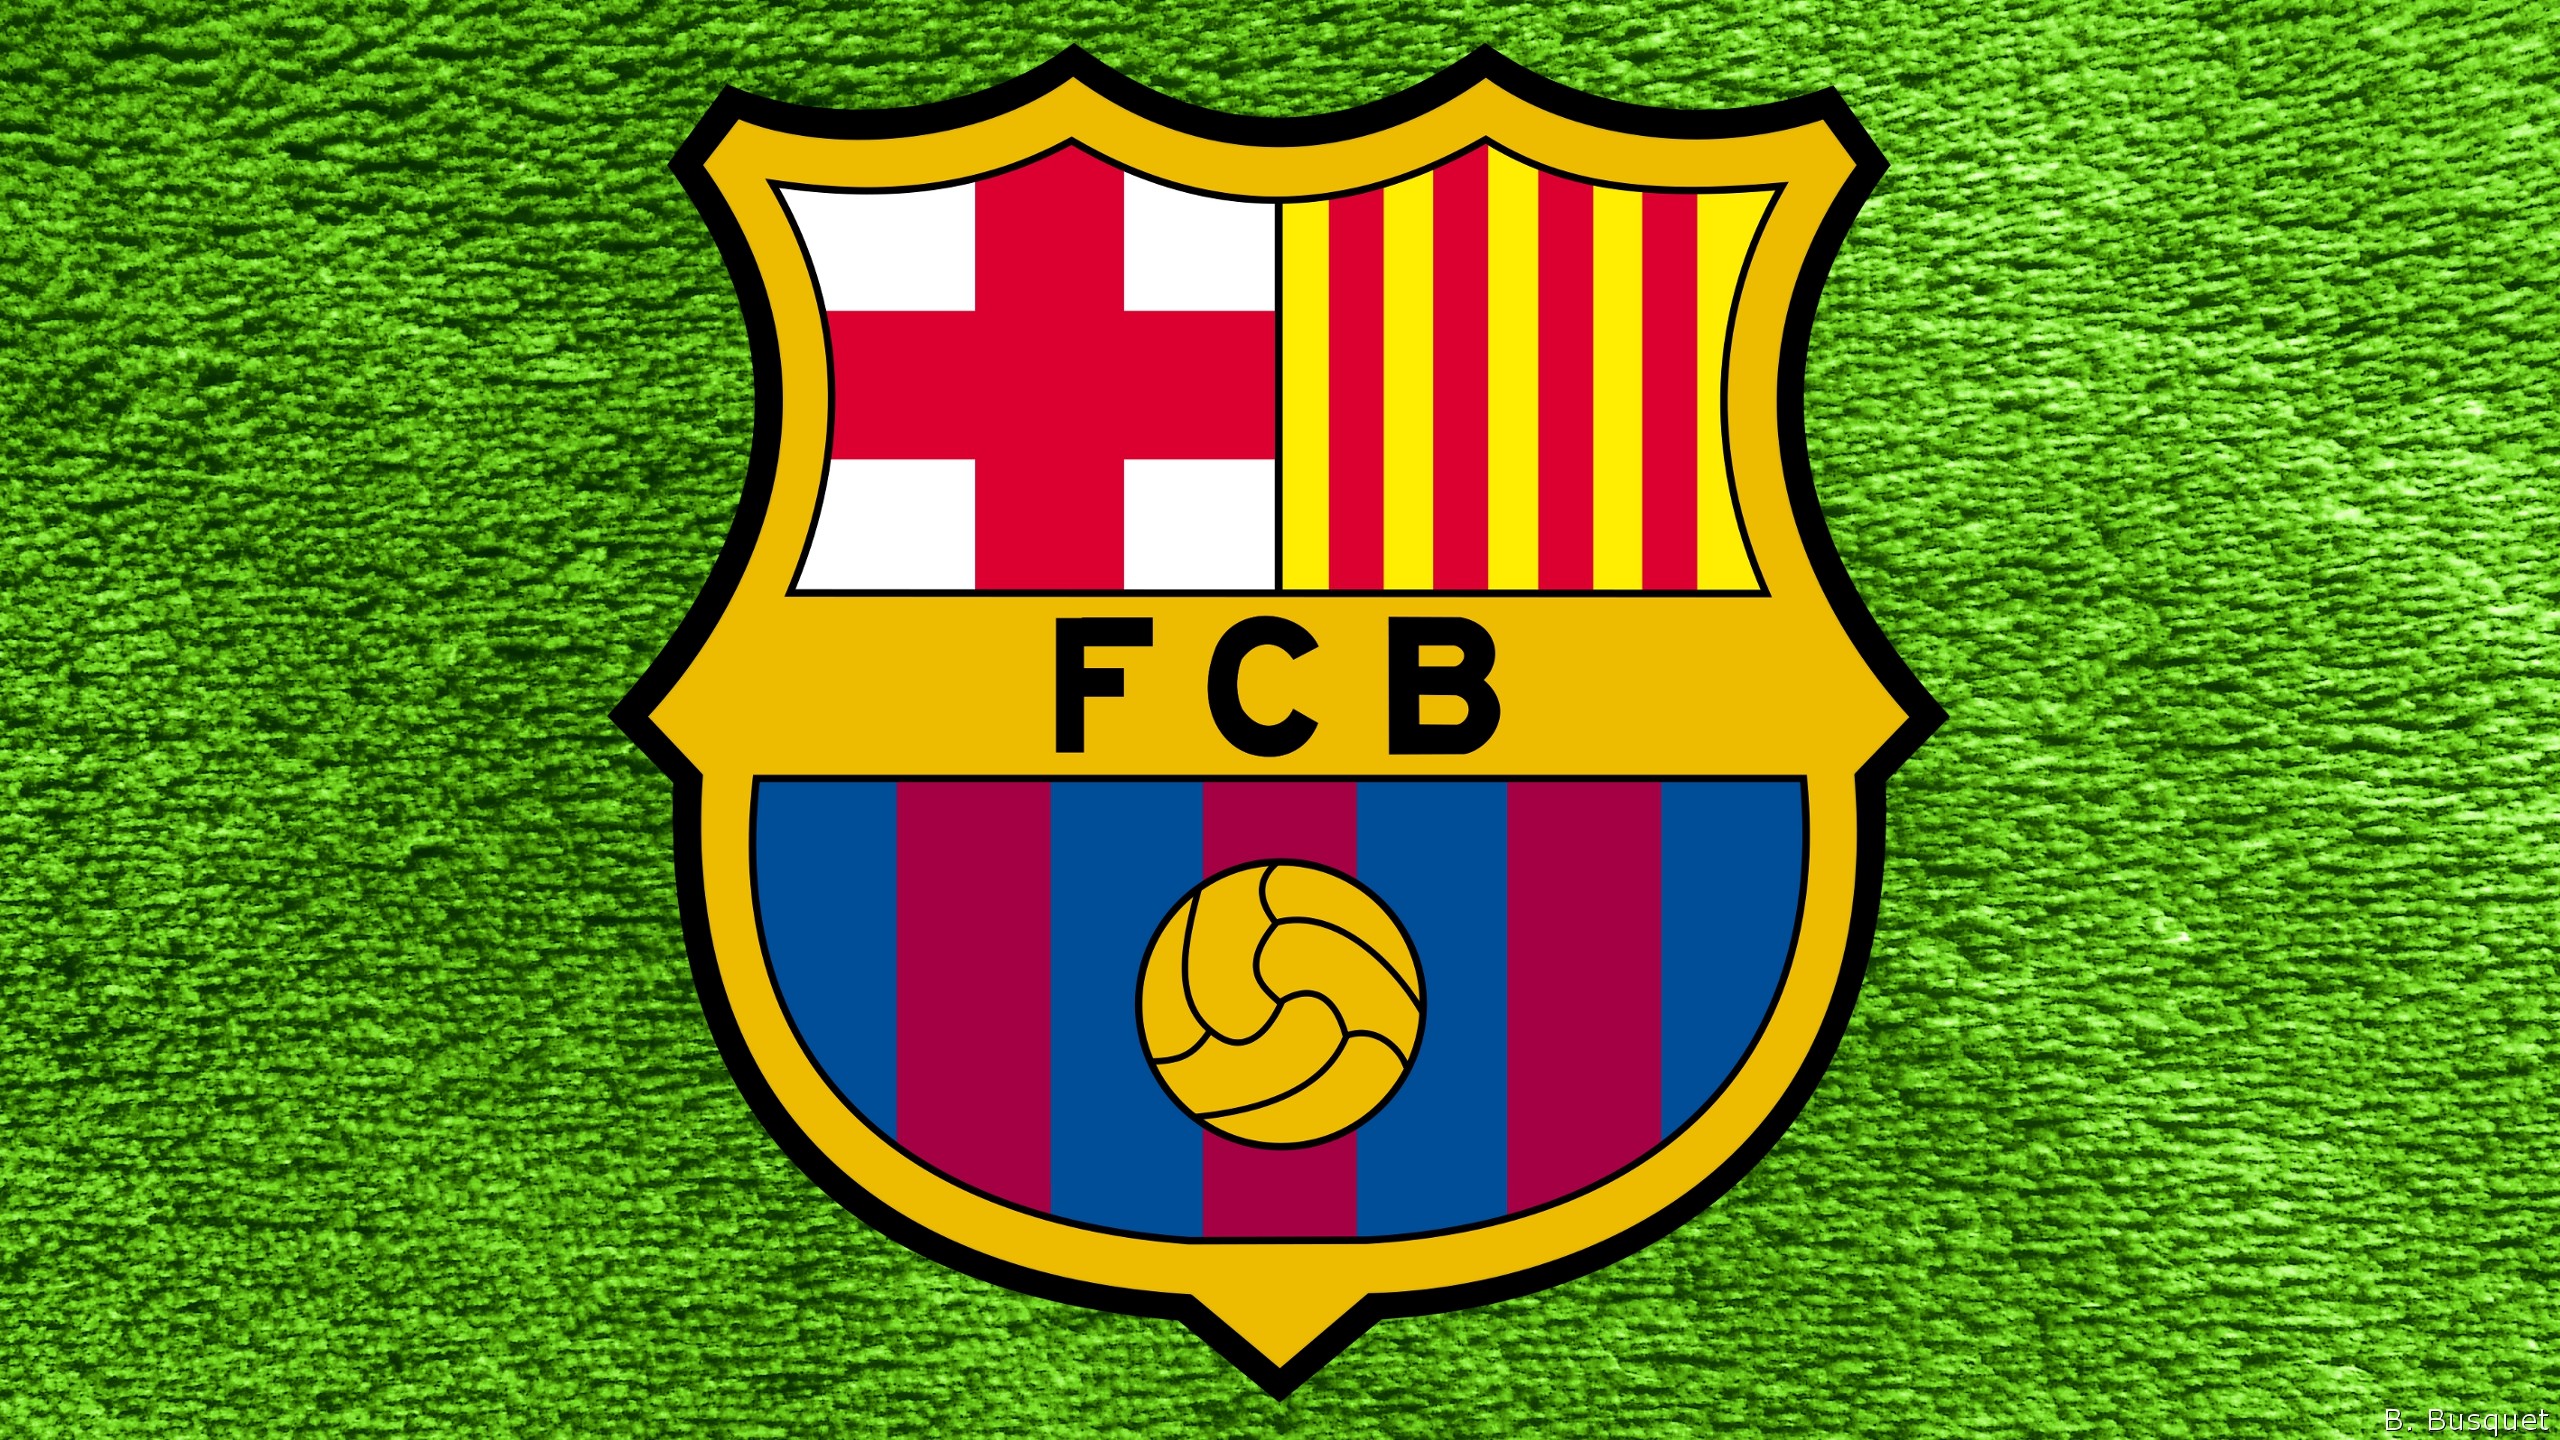 Герб футбольного клуба Барселона